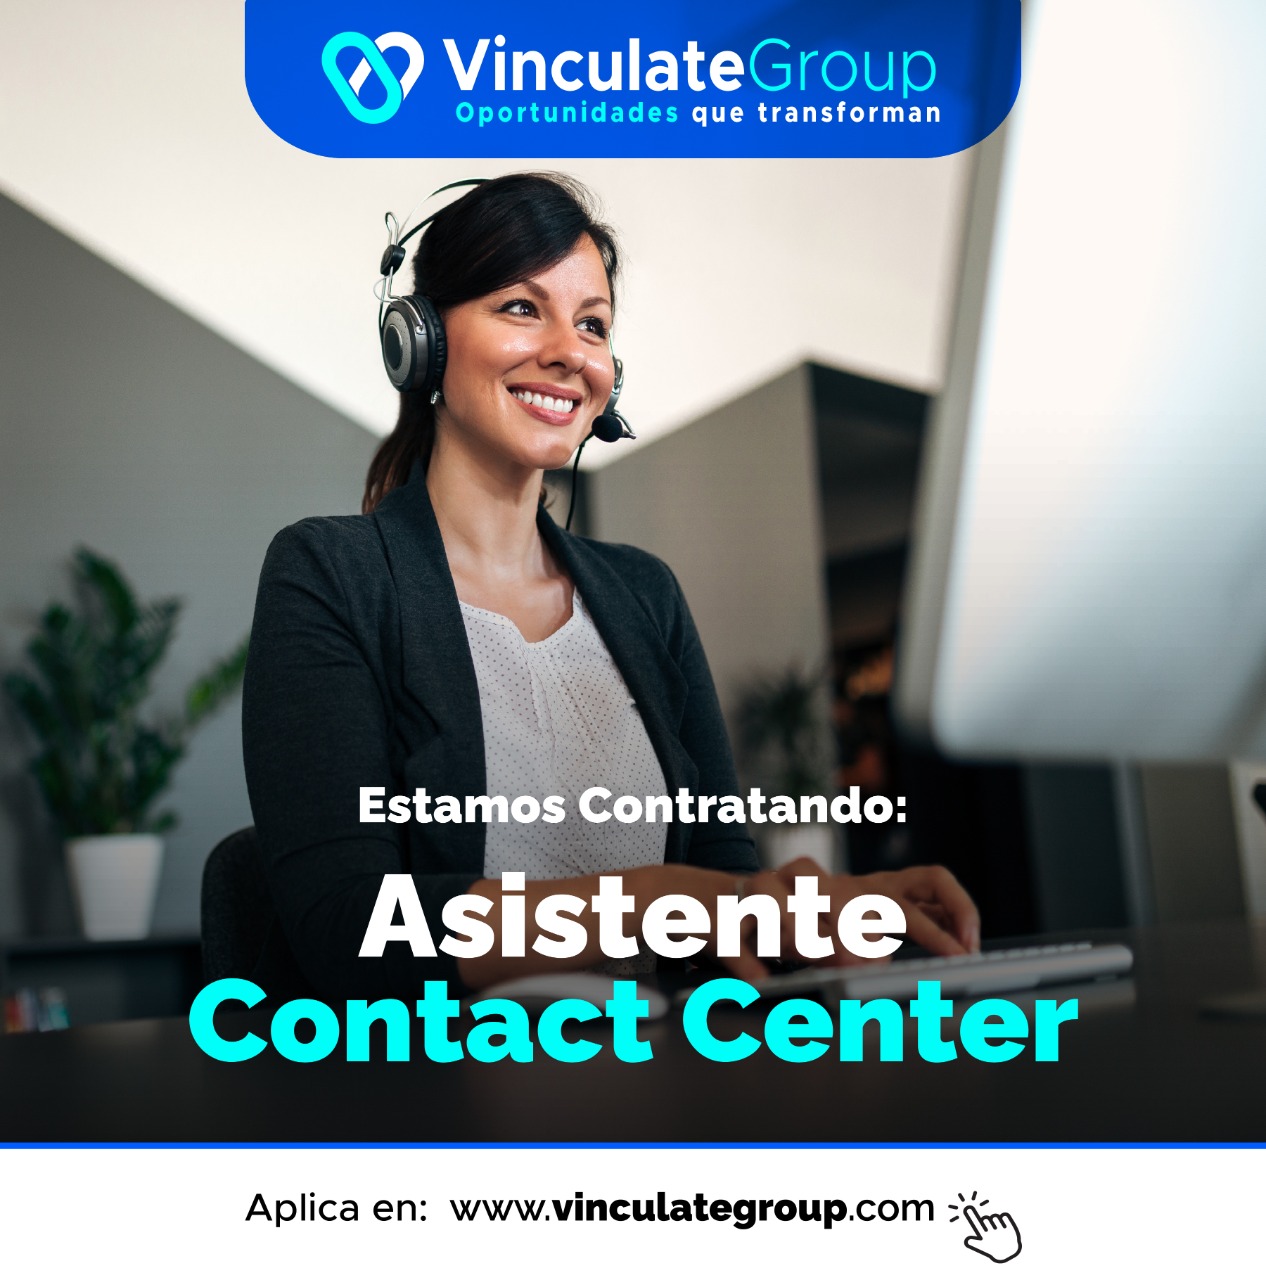 @ VinculateGroup
Oportunidades que transforman

   

Esta tratando:
Rd

Asistente
Contact Center

 

Aplica en: www.vinculategroup.com Ty